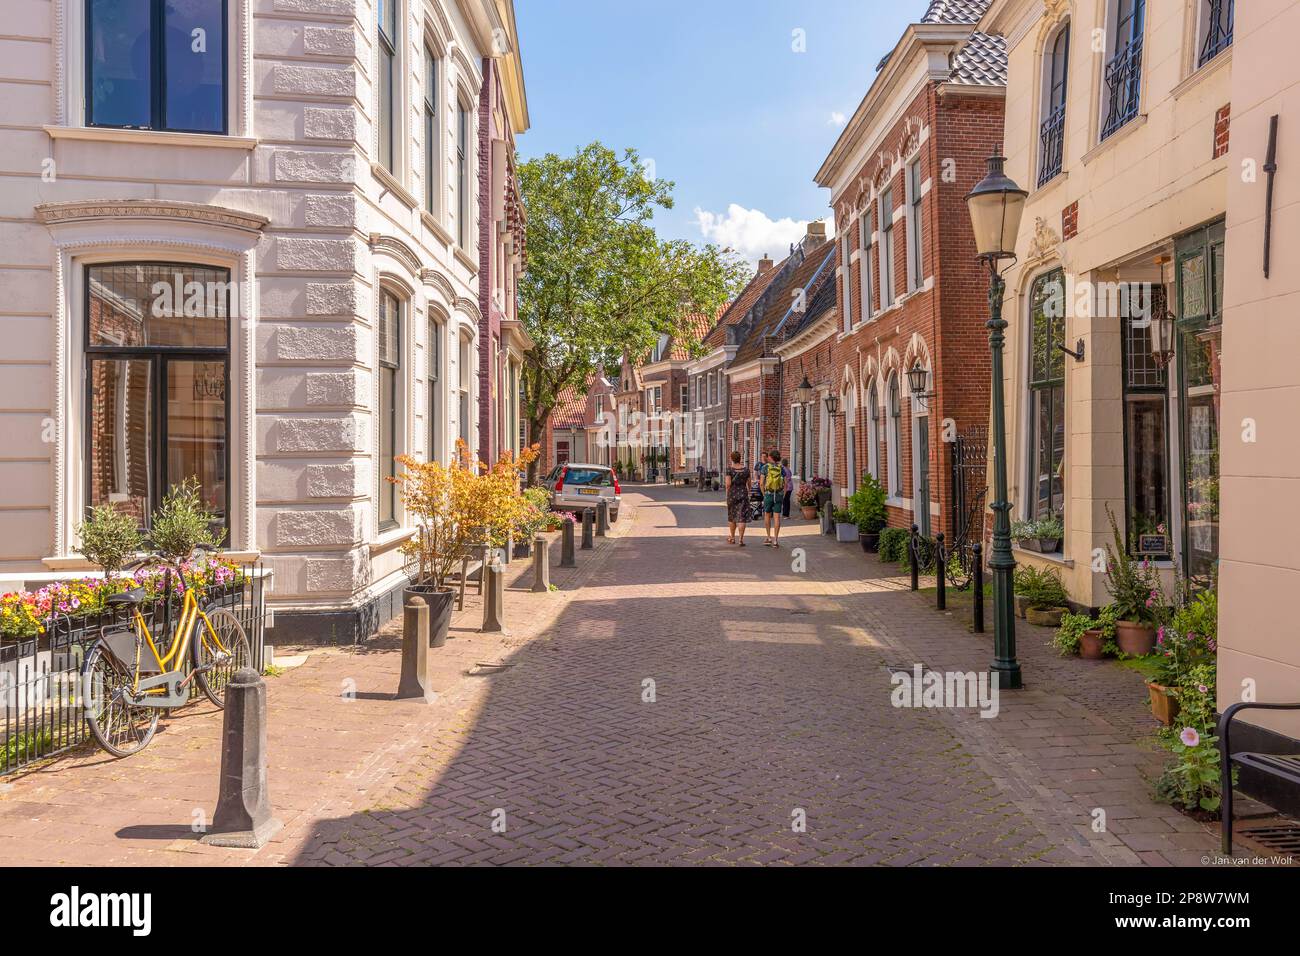 Rue étroite avec maisons anciennes dans la ville pittoresque d'Appingedam dans la province de Groningen; pays-Bas. Banque D'Images